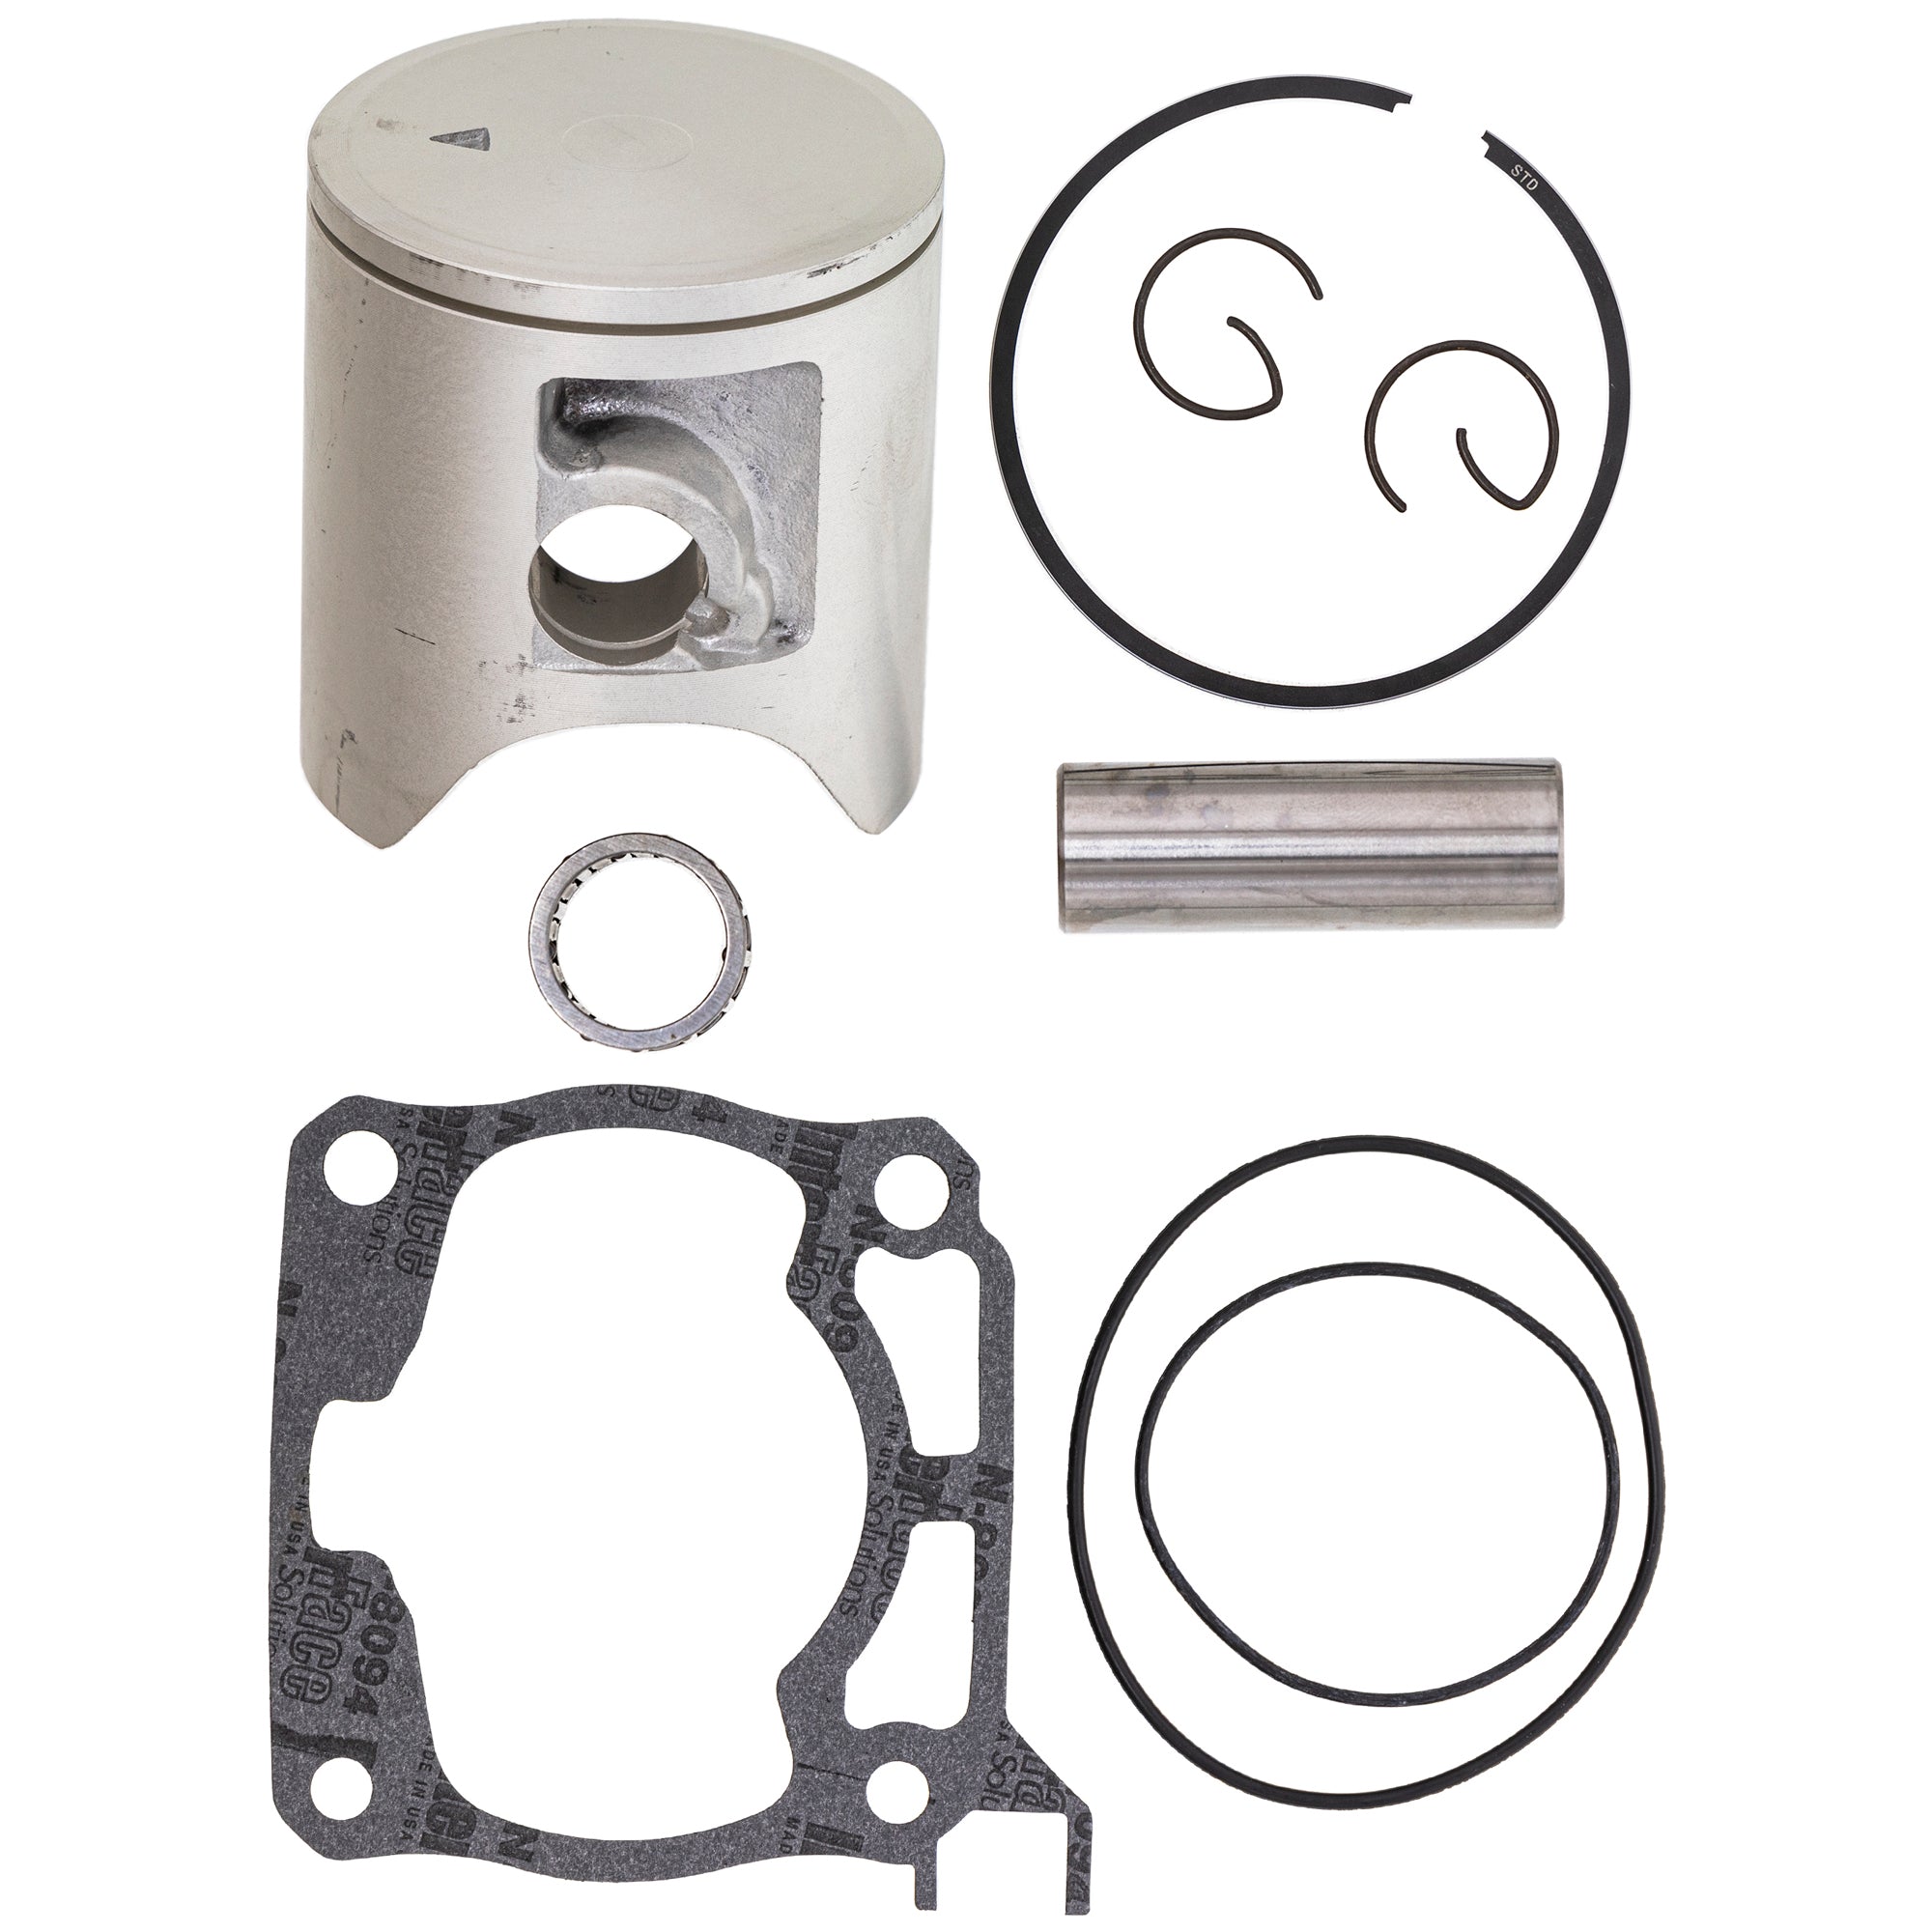 Piston Gasket Ring Wristpin Rebuild Kit for Yamaha YZ125 1C3-11631-03-C0 1C3-11631-03-B0 NICHE MK1001171